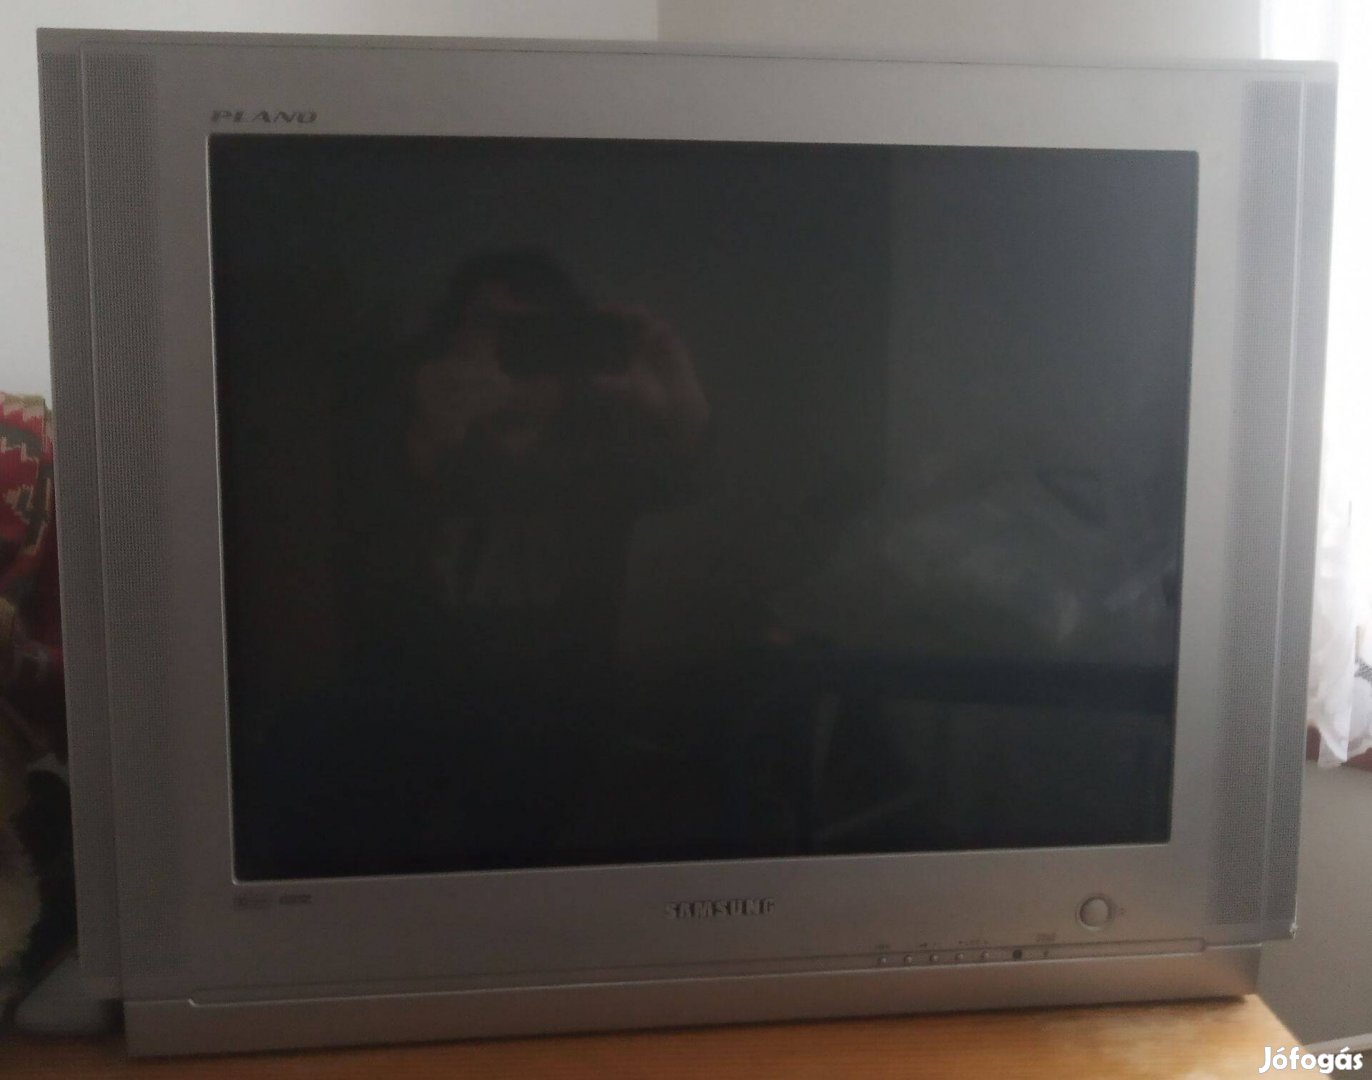 Olcsón eladó régi Samsung TV (70 cm-es képátló)!